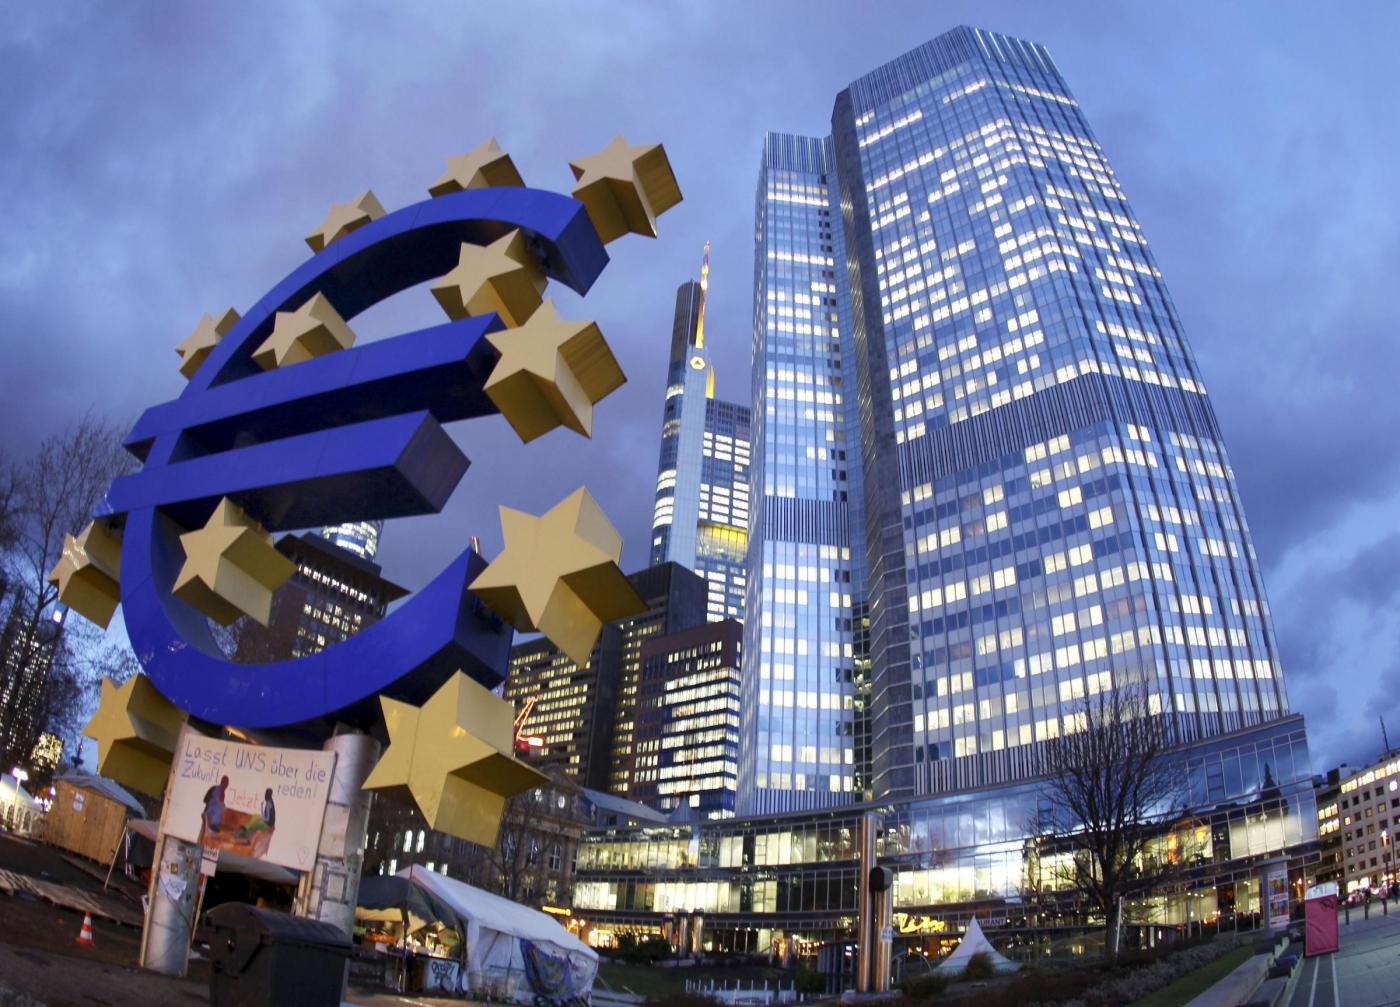 البنك المركزي الأوروبي 